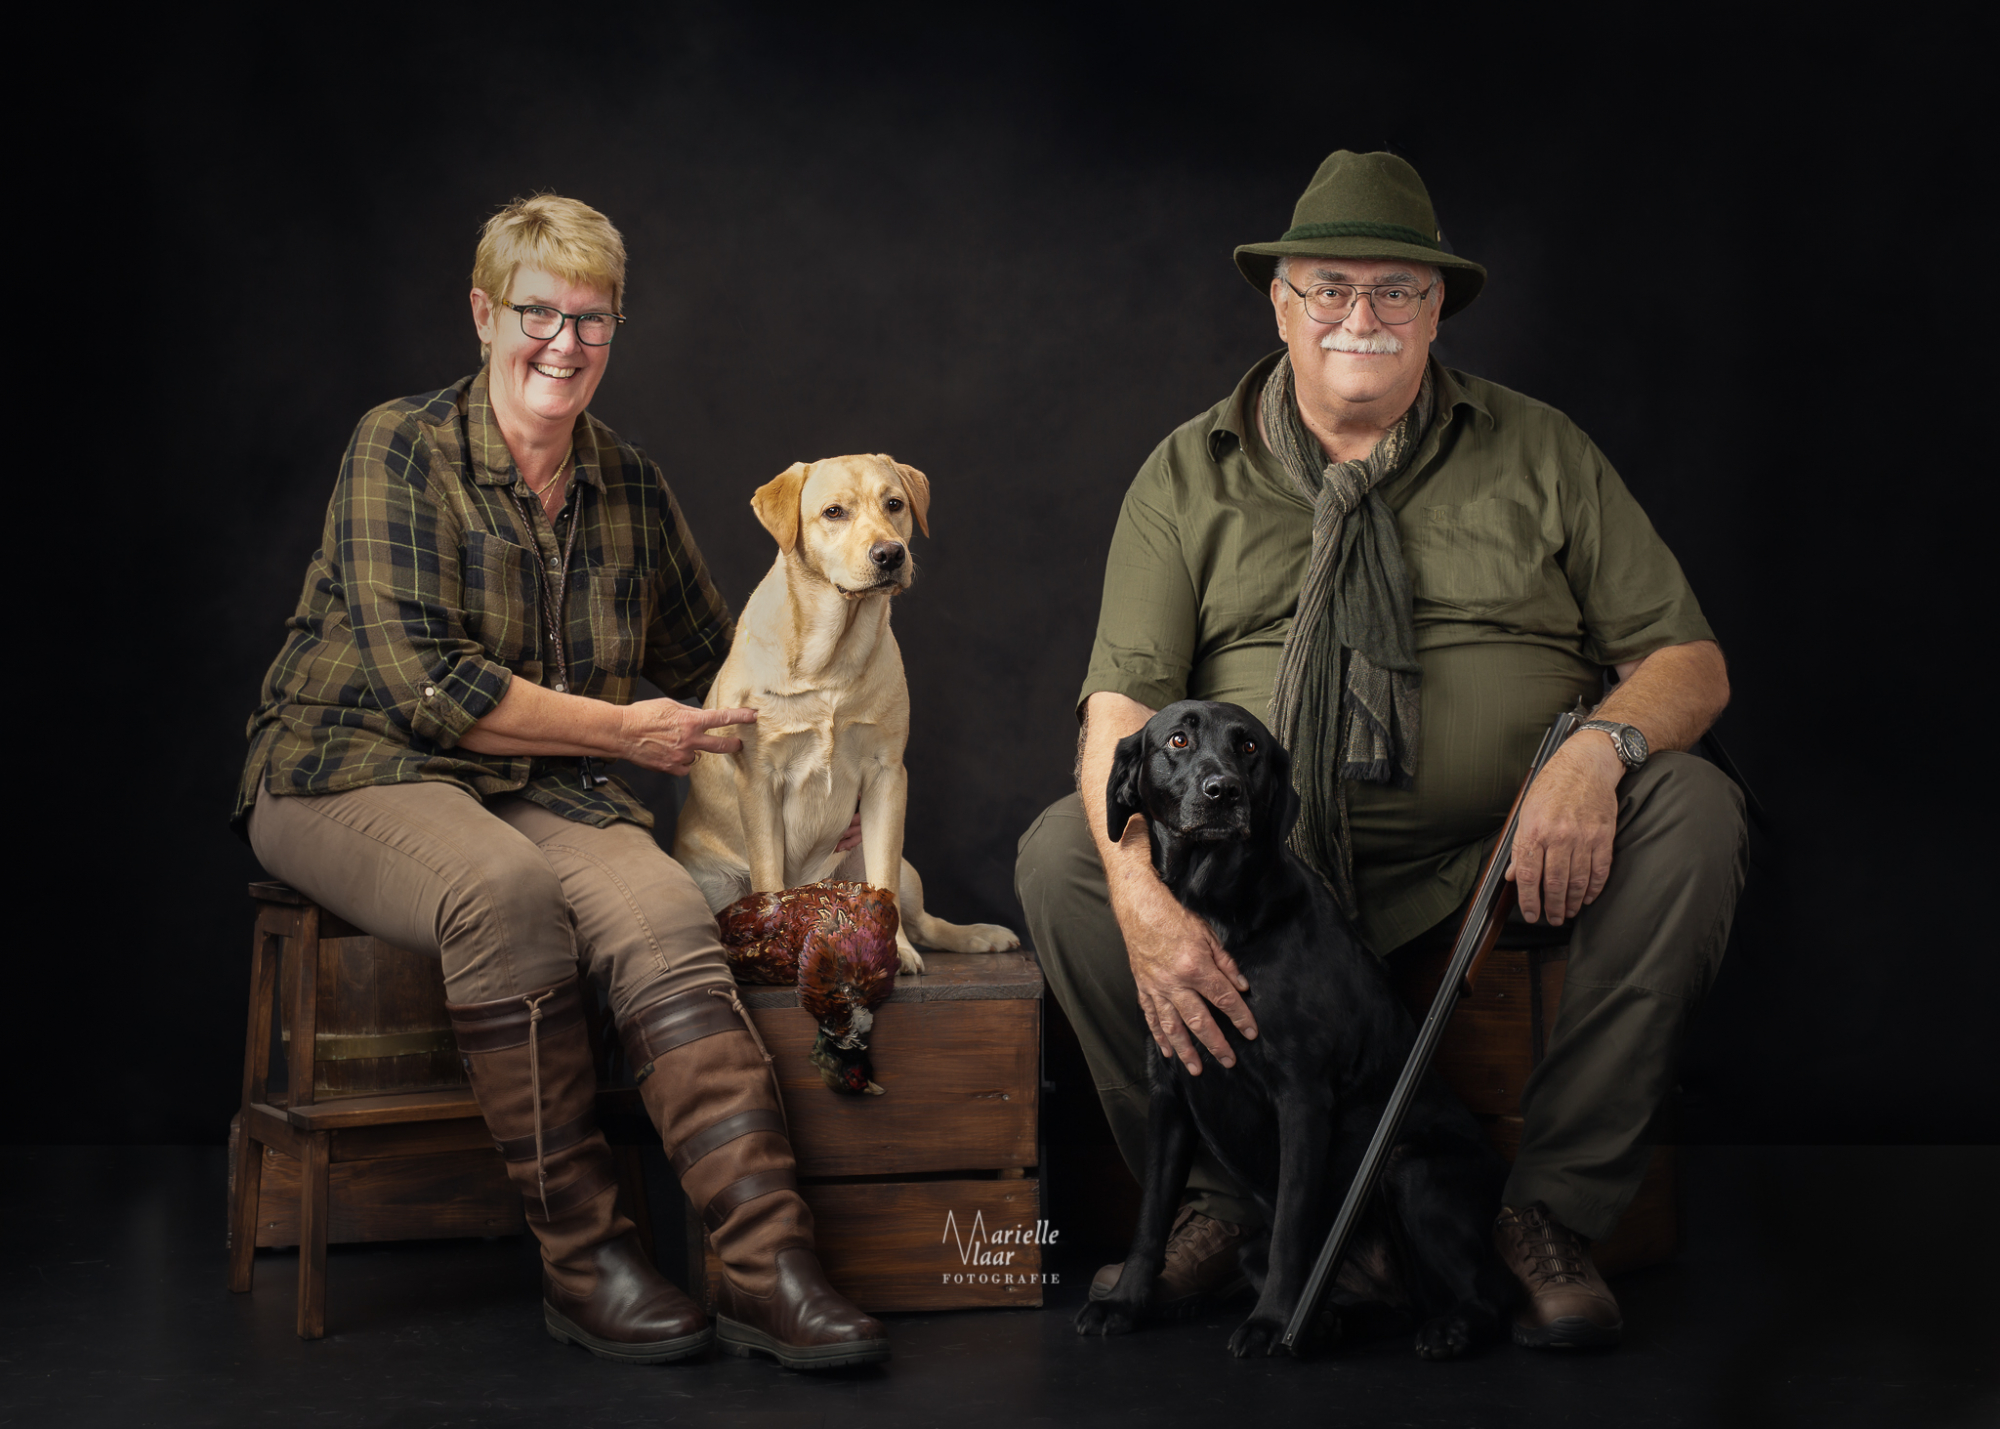 Jachthonden hondenfotograaf, gezin, Noord-Holland, Schagen, jachtsetting fotoshoot, schilderachtig foto, hondenfotografie